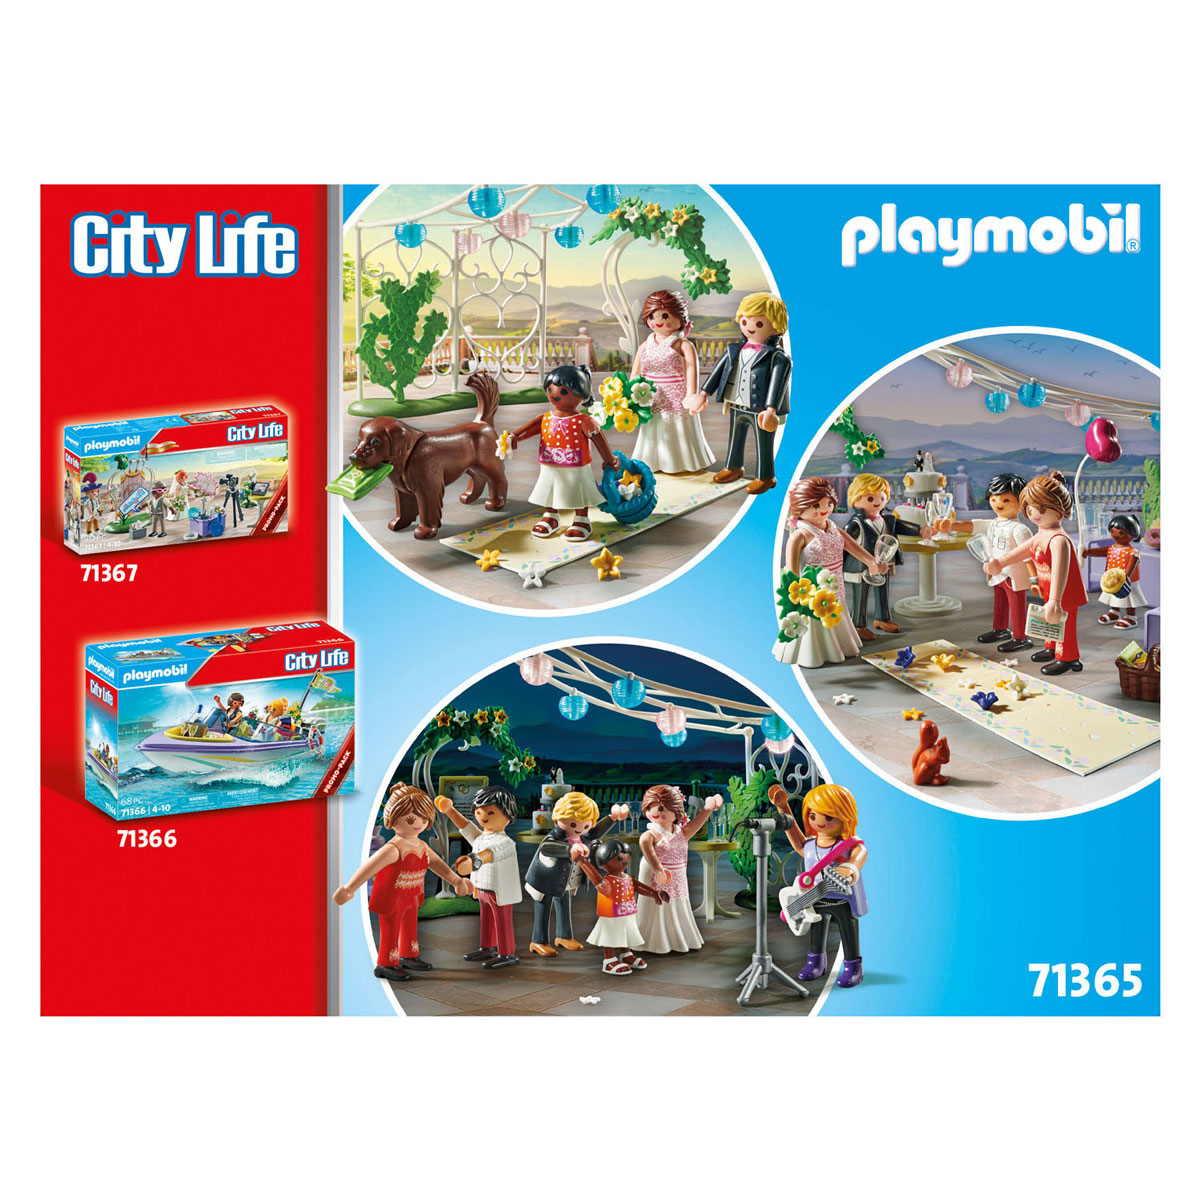 Pack promotionnel de fête de mariage Playmobil City Life - 71365